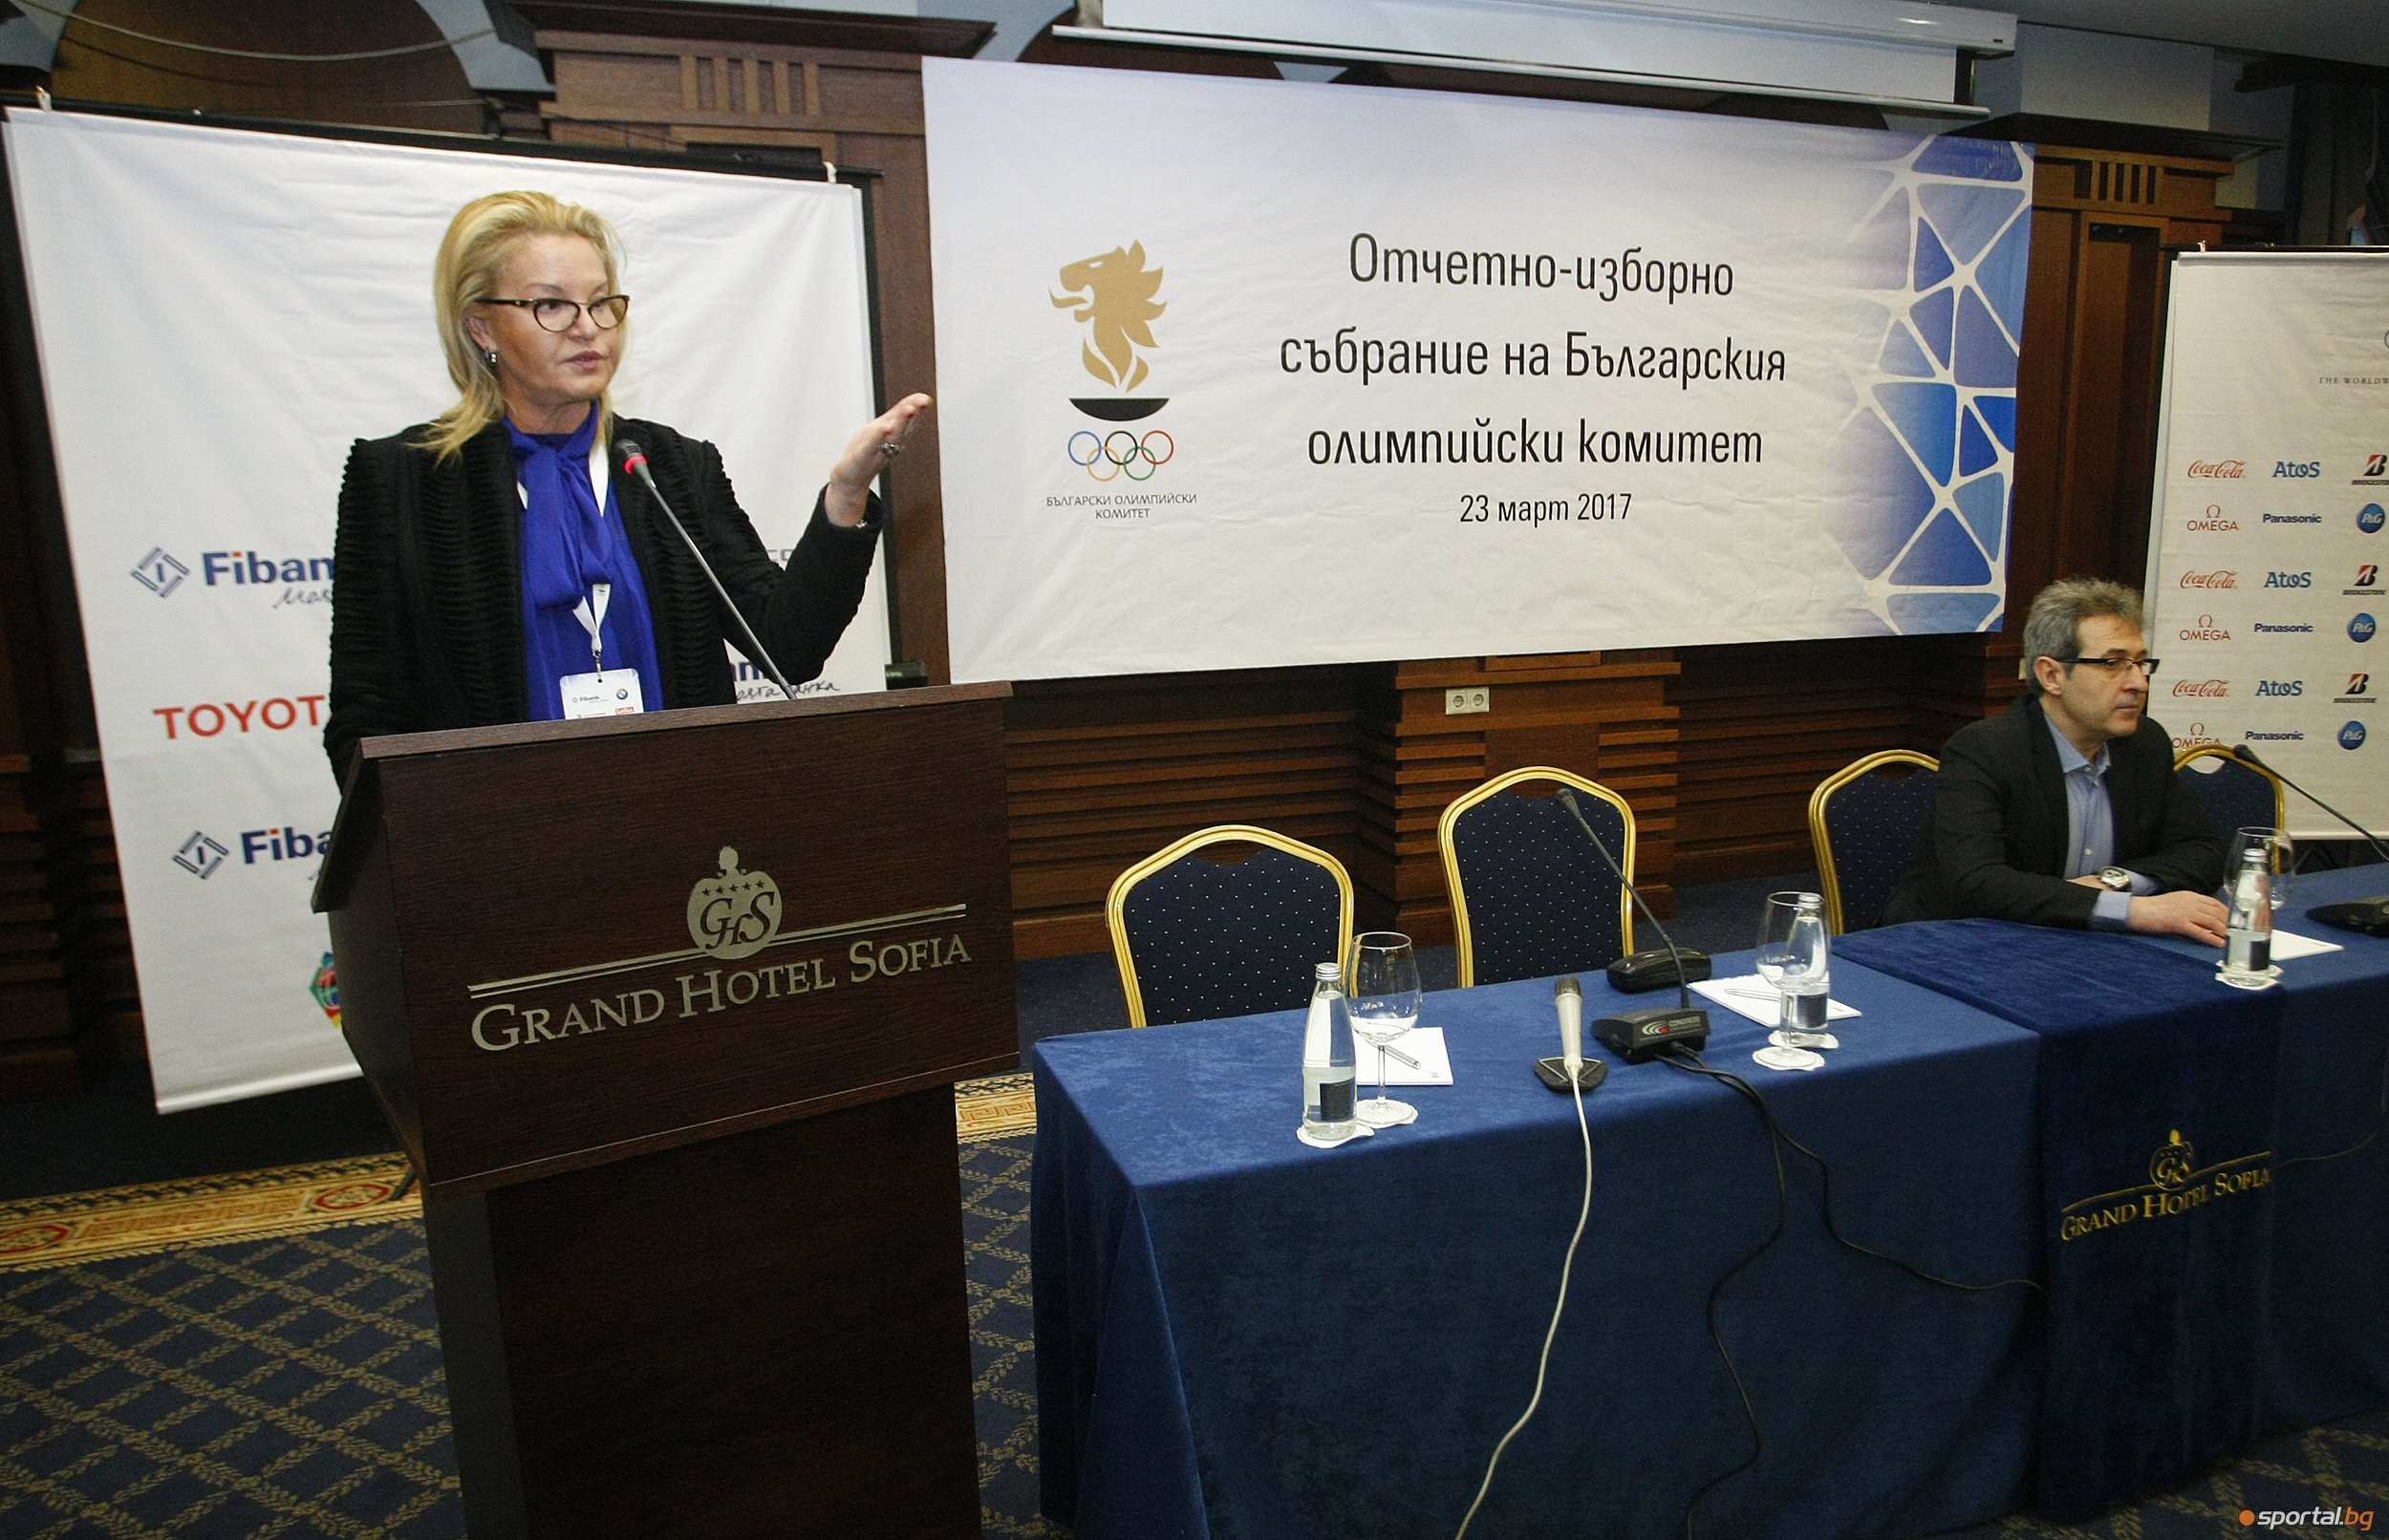 Отчетно-изборно събрание на българския олимпийски комитет